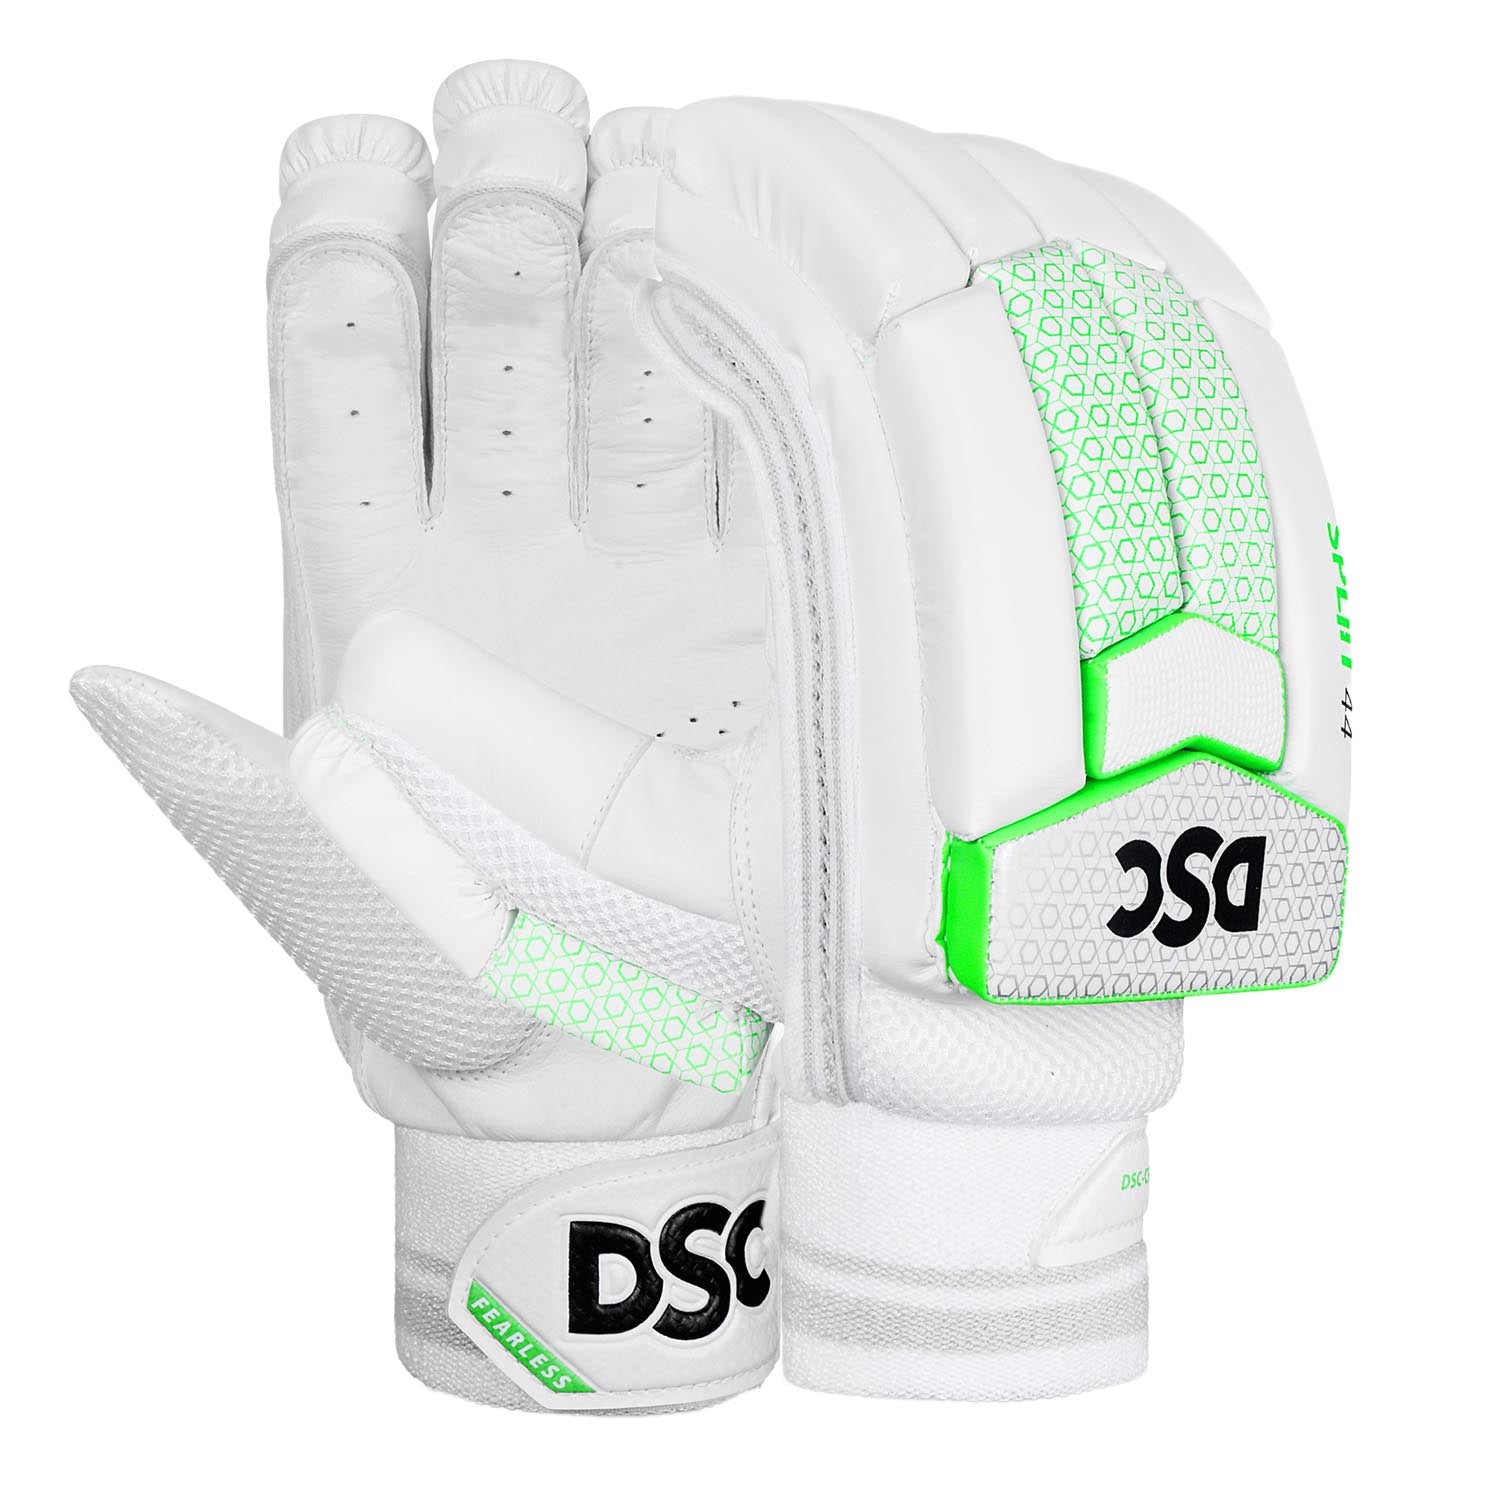 DSC Split 44 Cricket Batting Gloves New 23/24